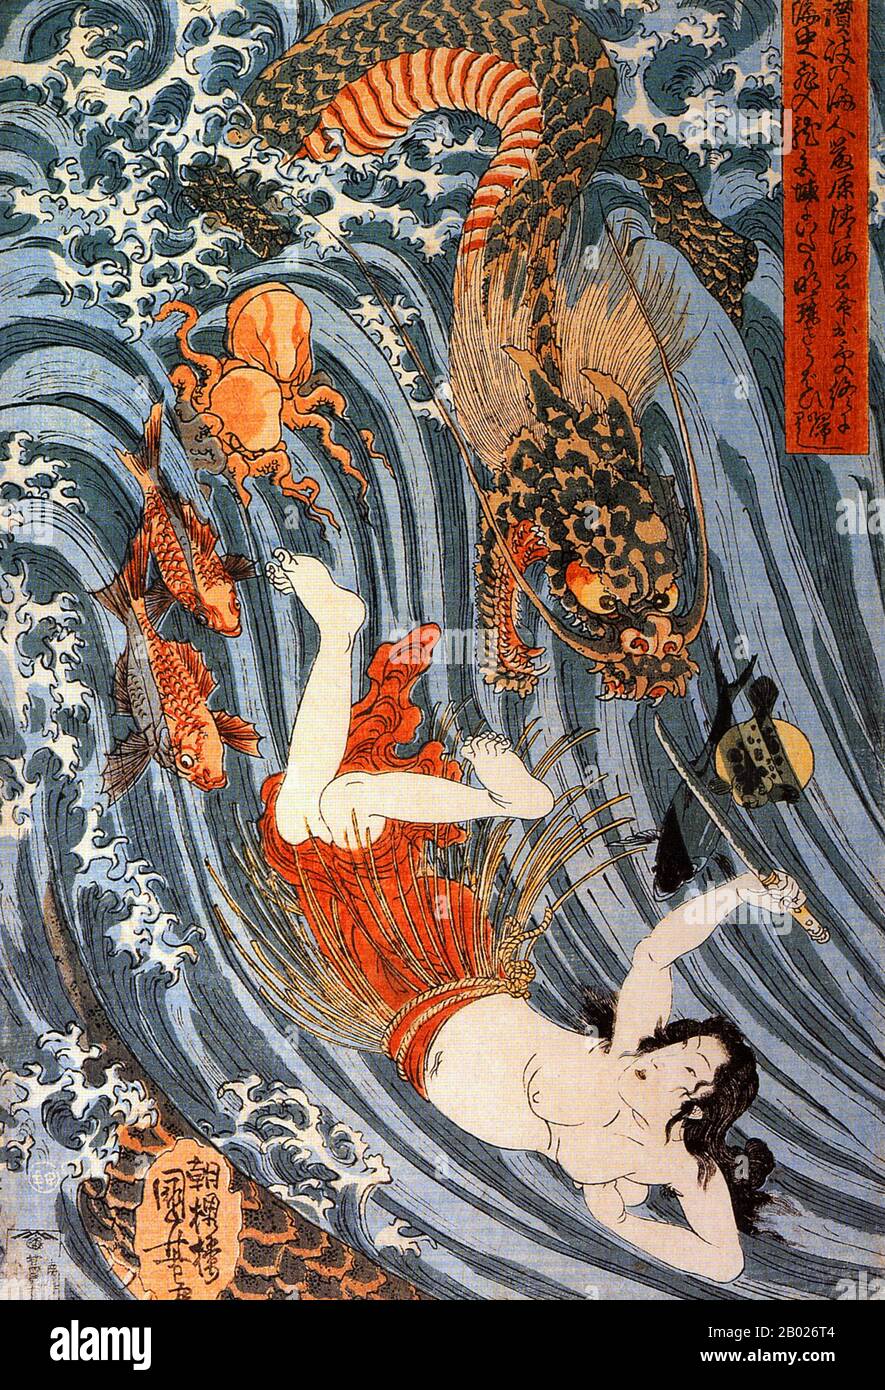 Ryūjin oder Ryōjin (龍神 'dragon god'), auch Ōwatatsumi genannt, ist in der japanischen Mythenwelt die tuteläre Gottheit des Meeres. Dieser japanische Drache symbolisierte die Macht des Ozeans, hatte einen großen Mund und konnte sich in eine menschliche Gestalt verwandeln. Ryūjin lebte in Ryūgū-jō, seinem Palast unter dem Meer, der aus roten und weißen Korallen erbaut wurde, von wo aus er die Gezeiten mit magischen Gezeitenjuwelen kontrollierte. Meeresschildkröten, Fische und Quallen werden oft als Diener Ryūjin dargestellt. Ryūjin war der Vater der schönen Göttin Otohime, die den Jäger-Fürst Hoori heiratete. Der erste Kaiser Japans, Kaiser Jimmu, ist sai Stockfoto